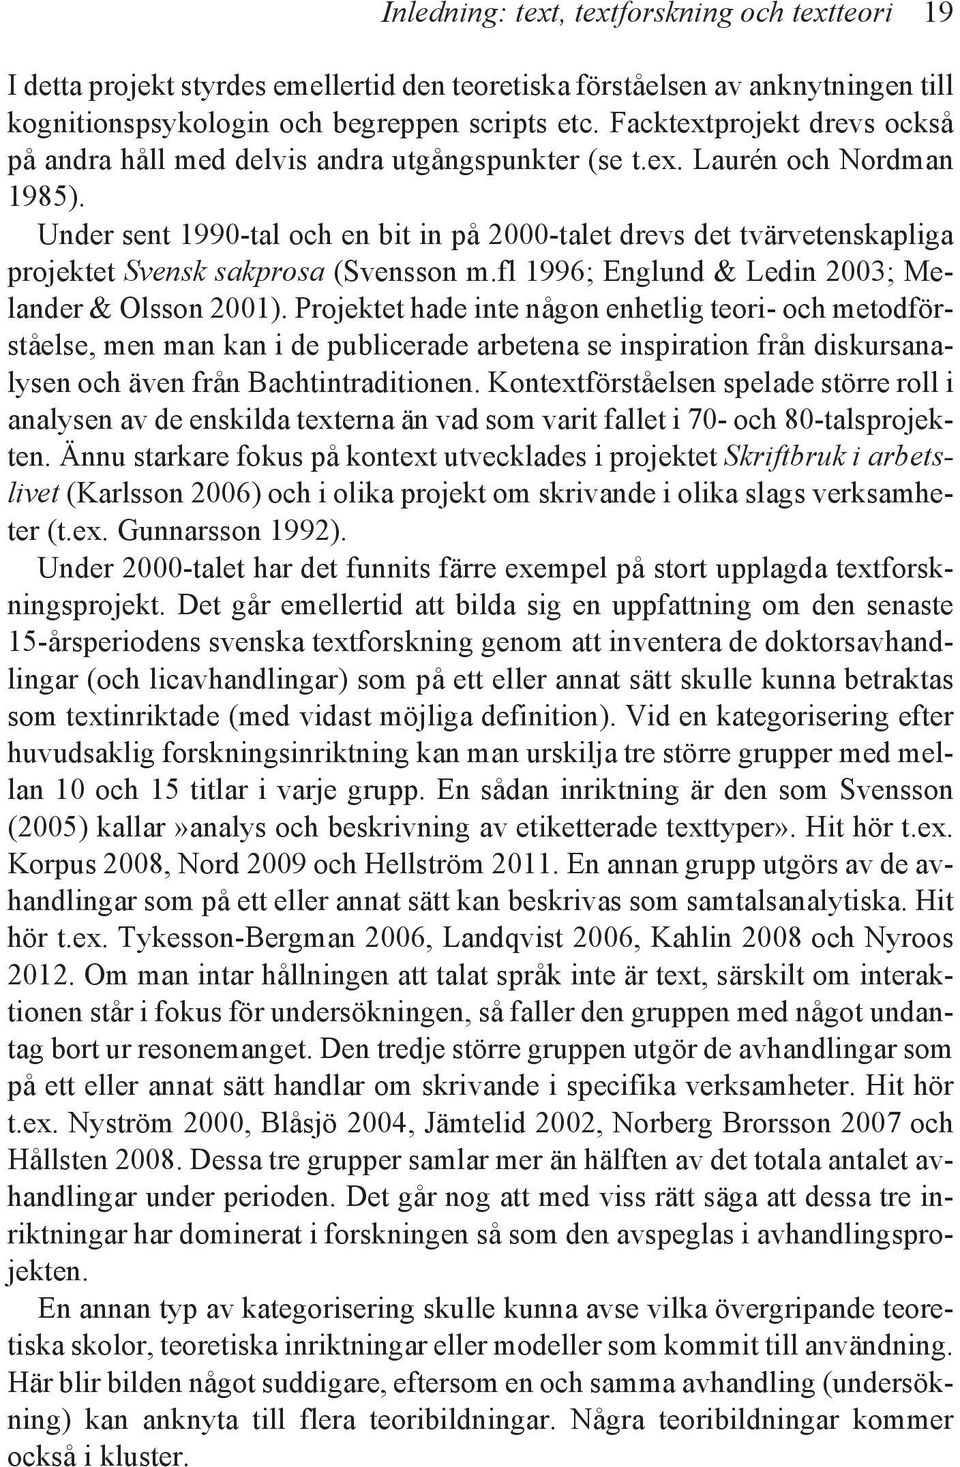 Under sent 1990-tal och en bit in på 2000-talet drevs det tvärvetenskapliga projektet Svensk sakprosa (Svensson m.fl 1996; Englund & Ledin 2003; Melander & Olsson 2001).